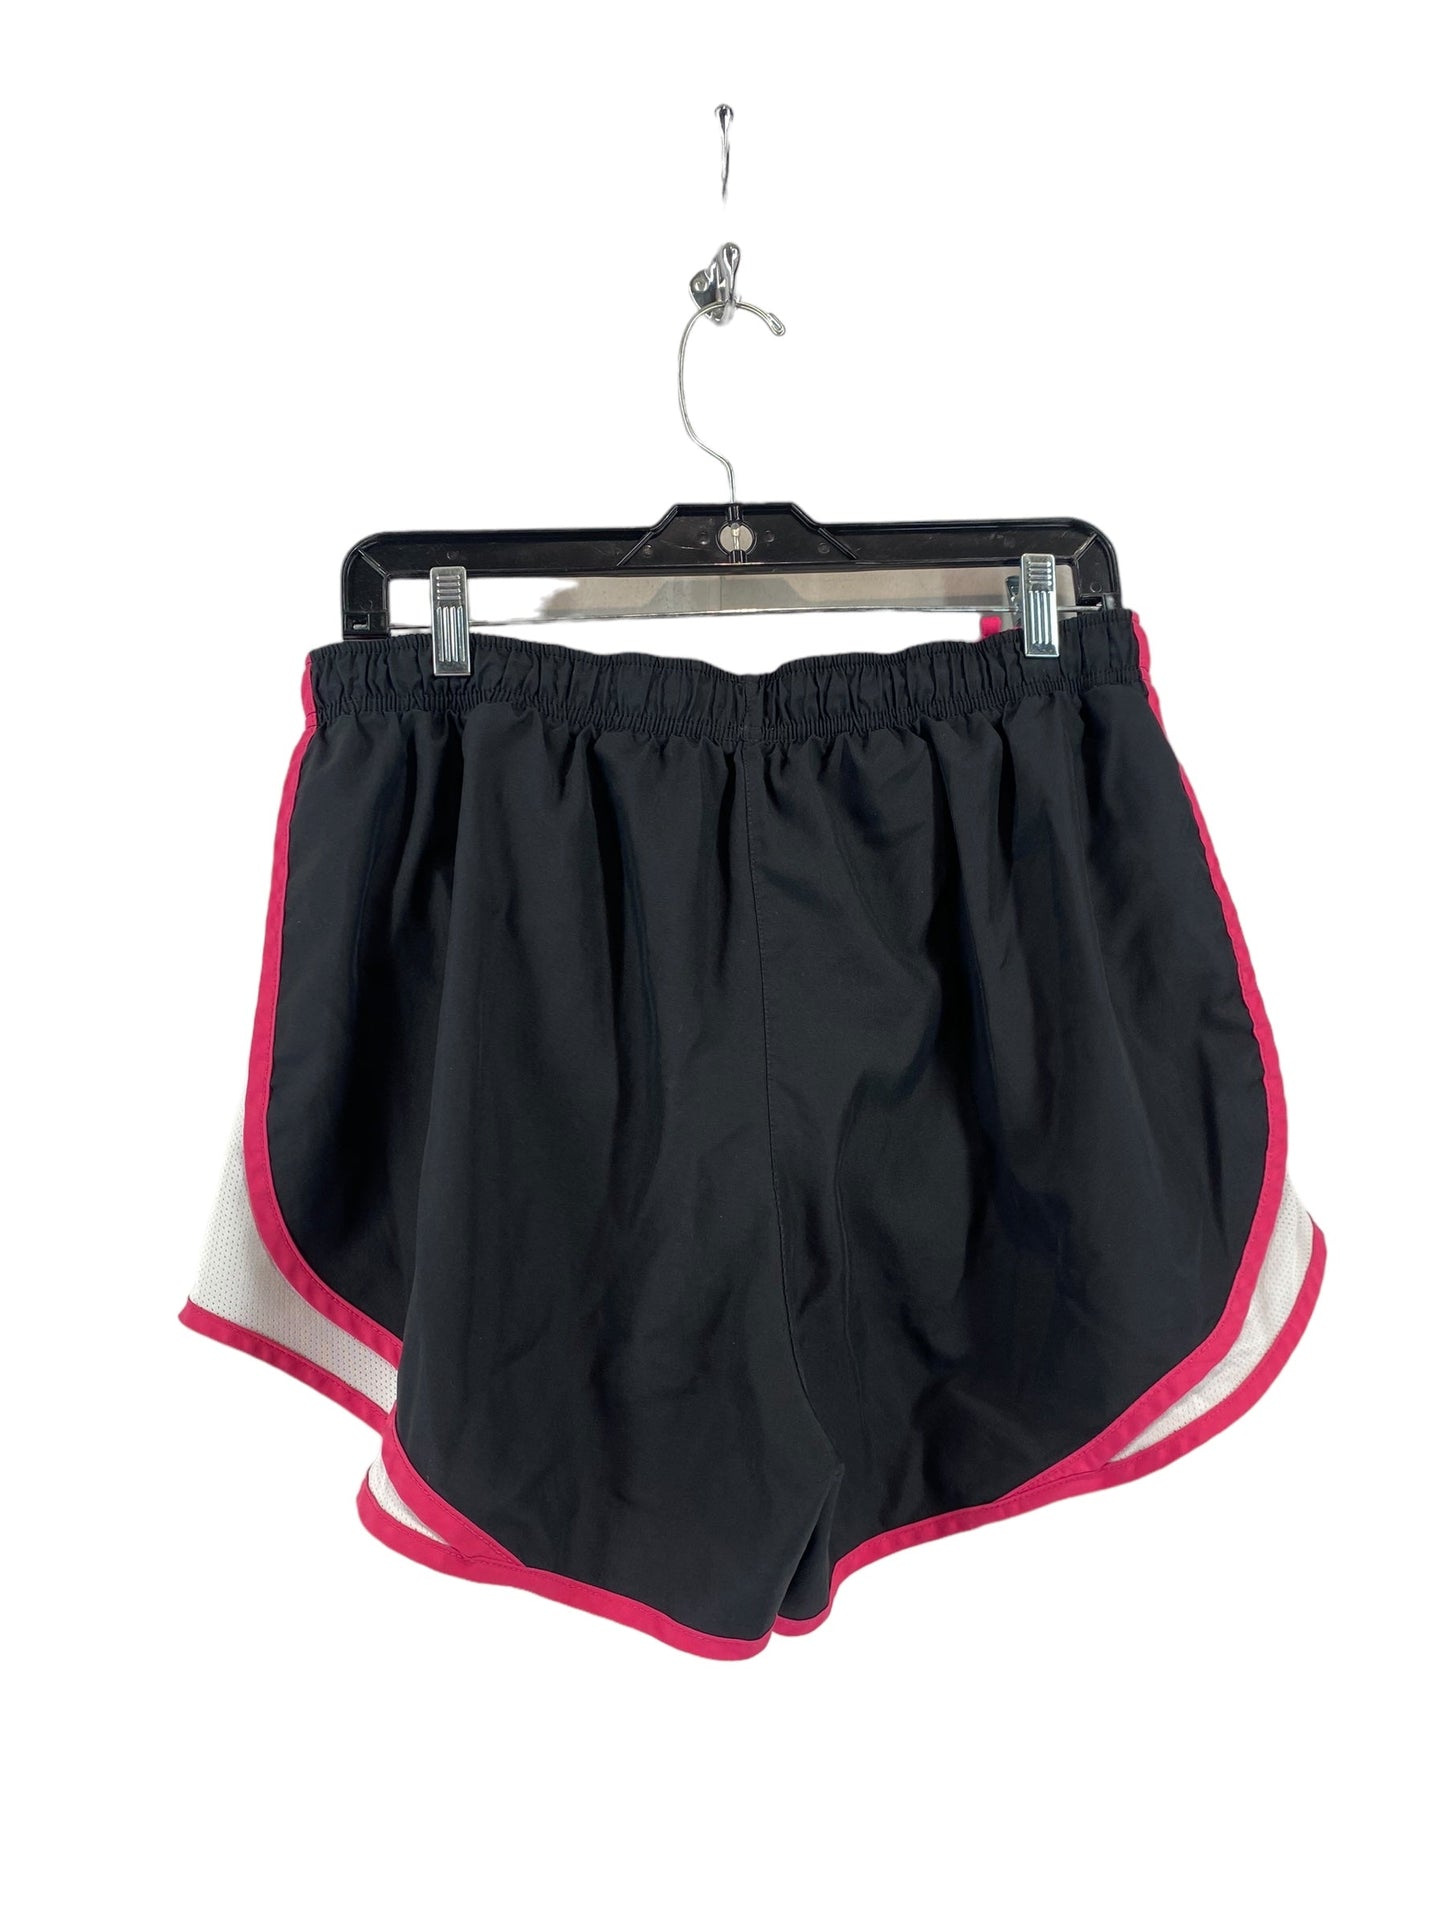 Black & Pink Athletic Shorts Nike, Size Xl